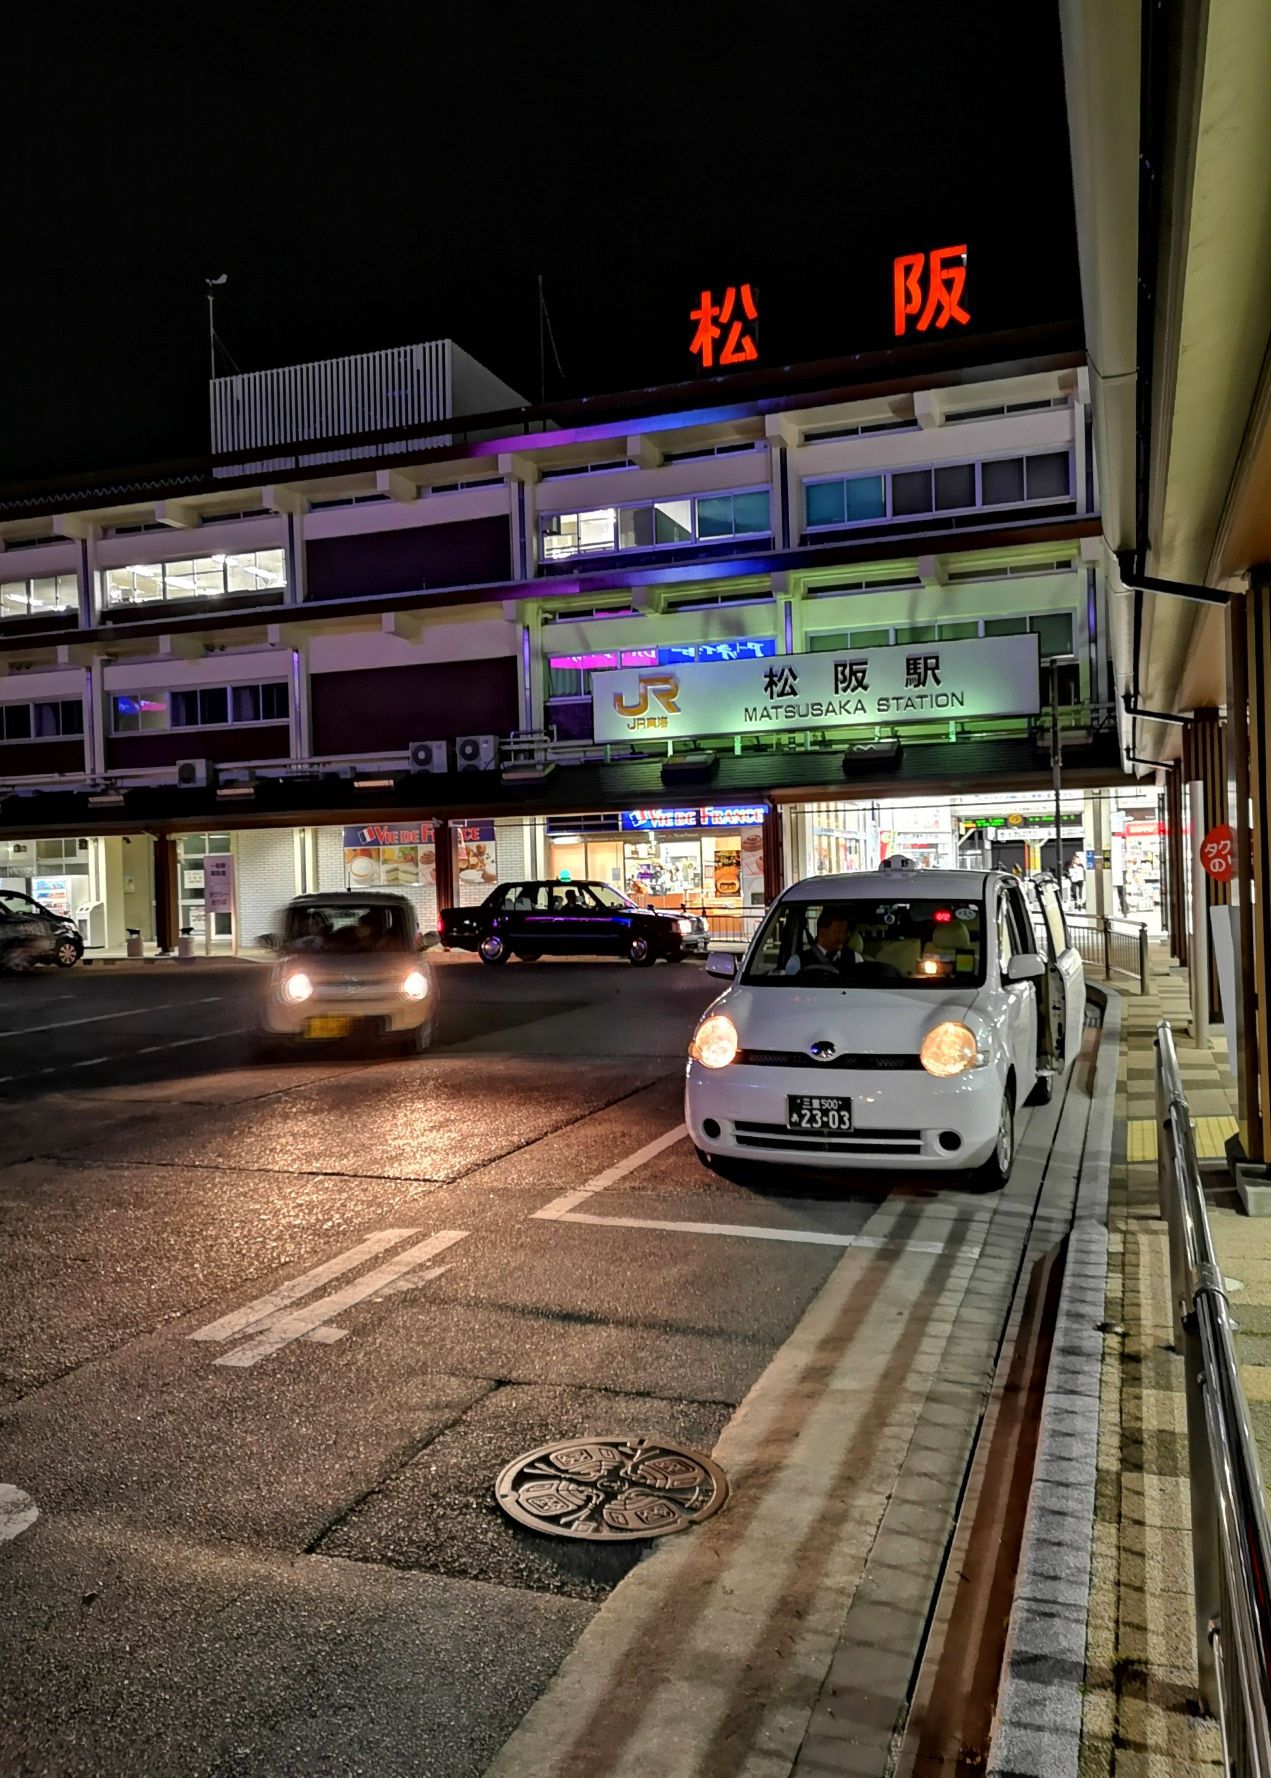 以松阪牛肉而出名的城市：松阪。 松阪市位于伊势半岛的中部，与名古屋机场隔海相望。松阪市虽然规模不大，